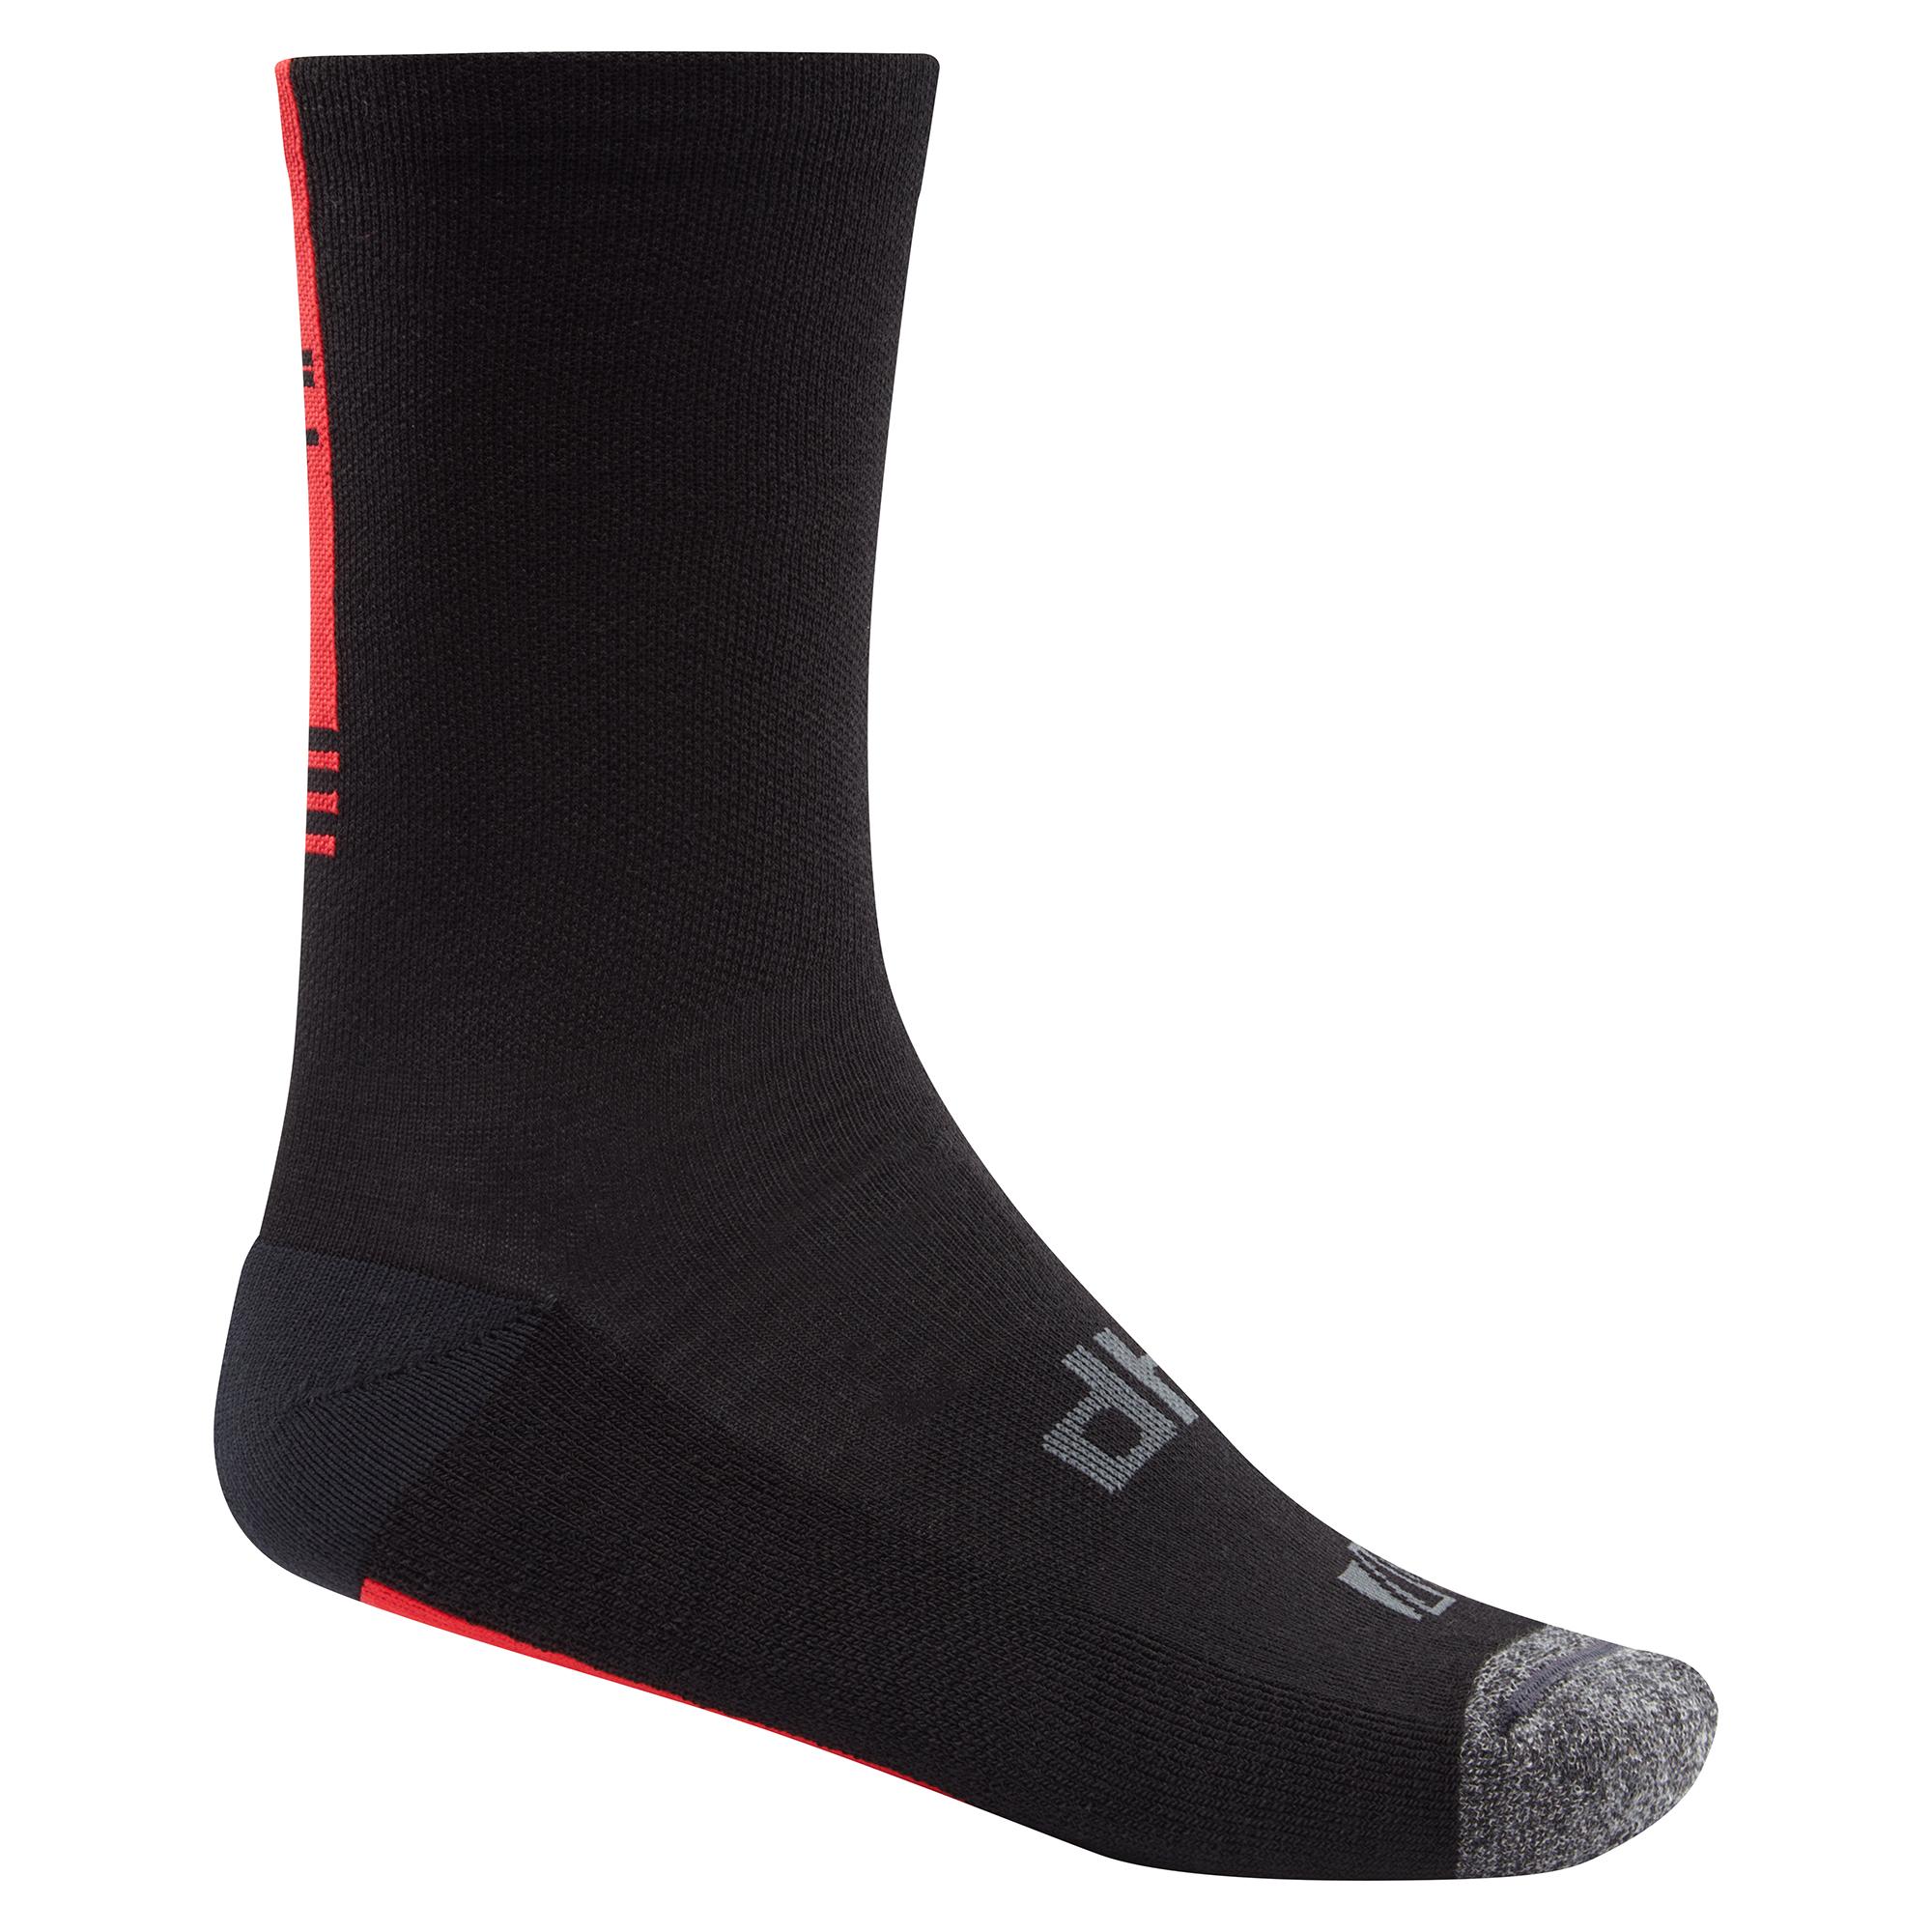 Dhb Aeron Winter Weight Merino Sock  Black/red